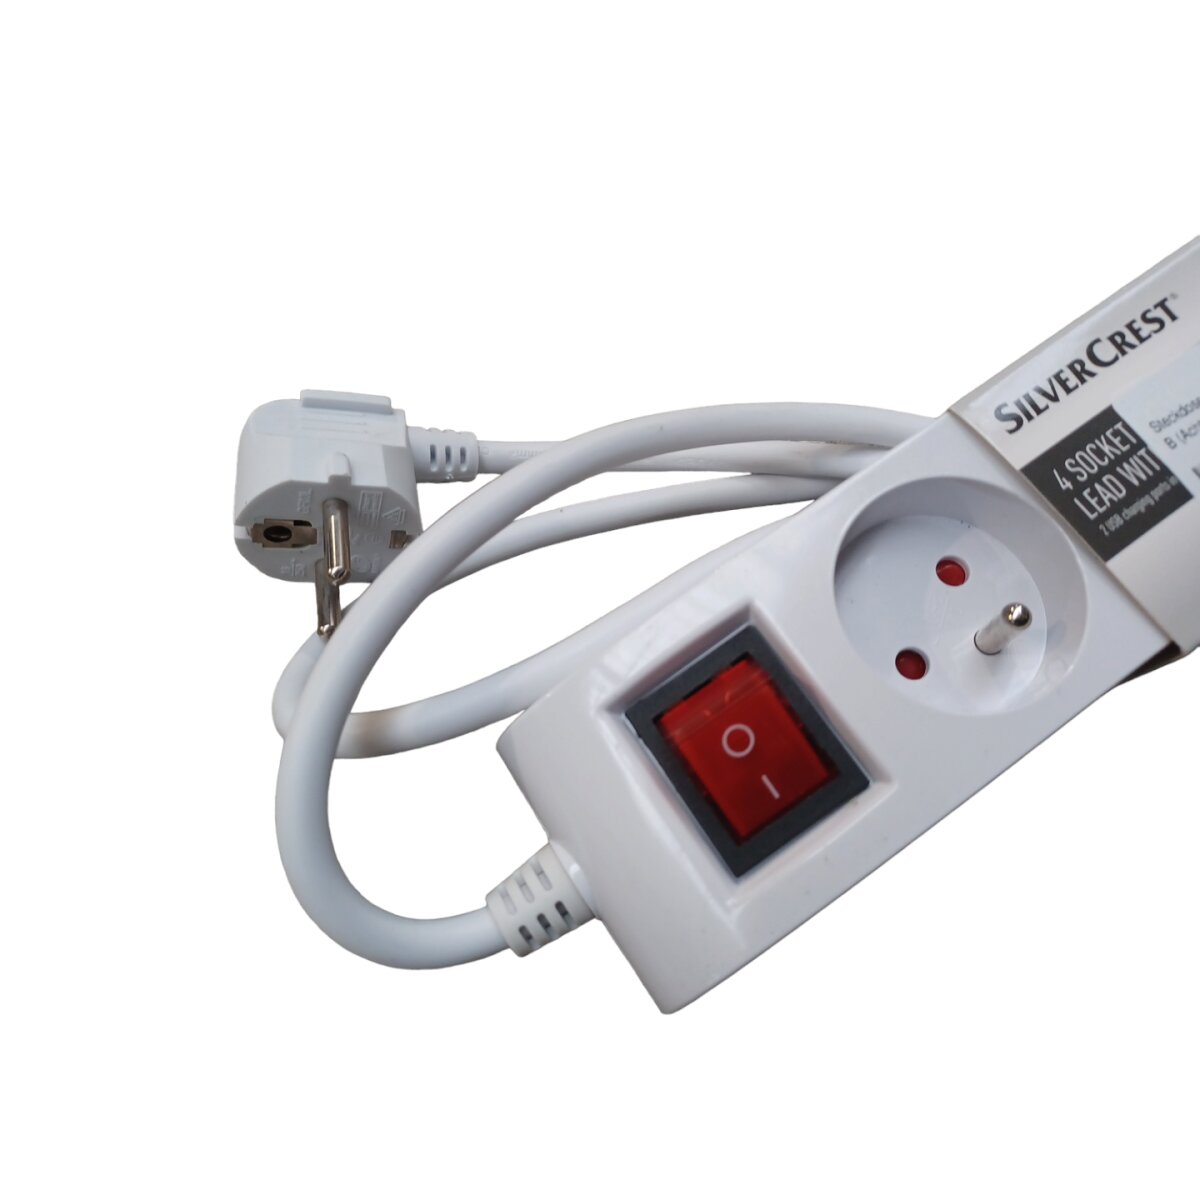 B-Ware USB neuwertig, 4-fach - 6,99 Steckdosenleiste, SILVERCREST® € mit